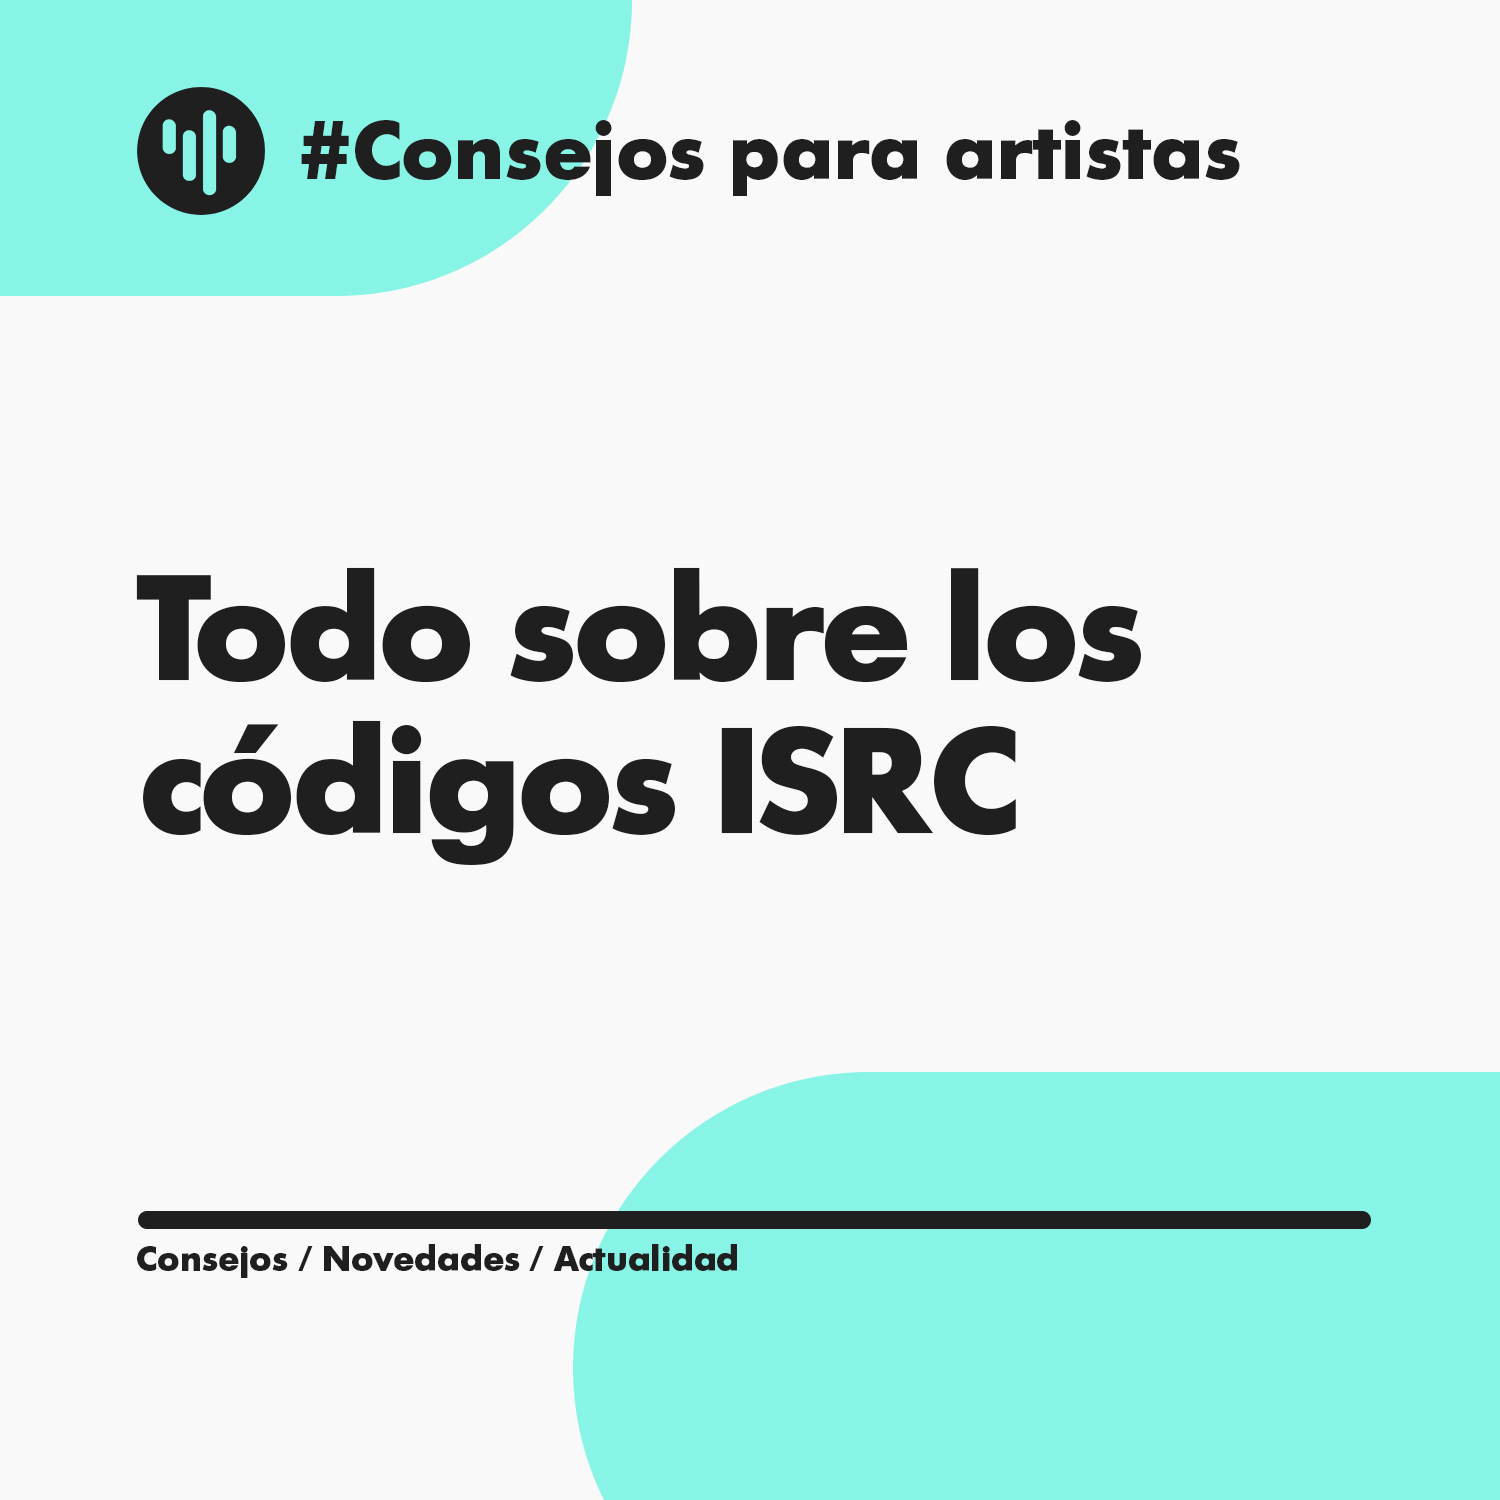 Código ISRC